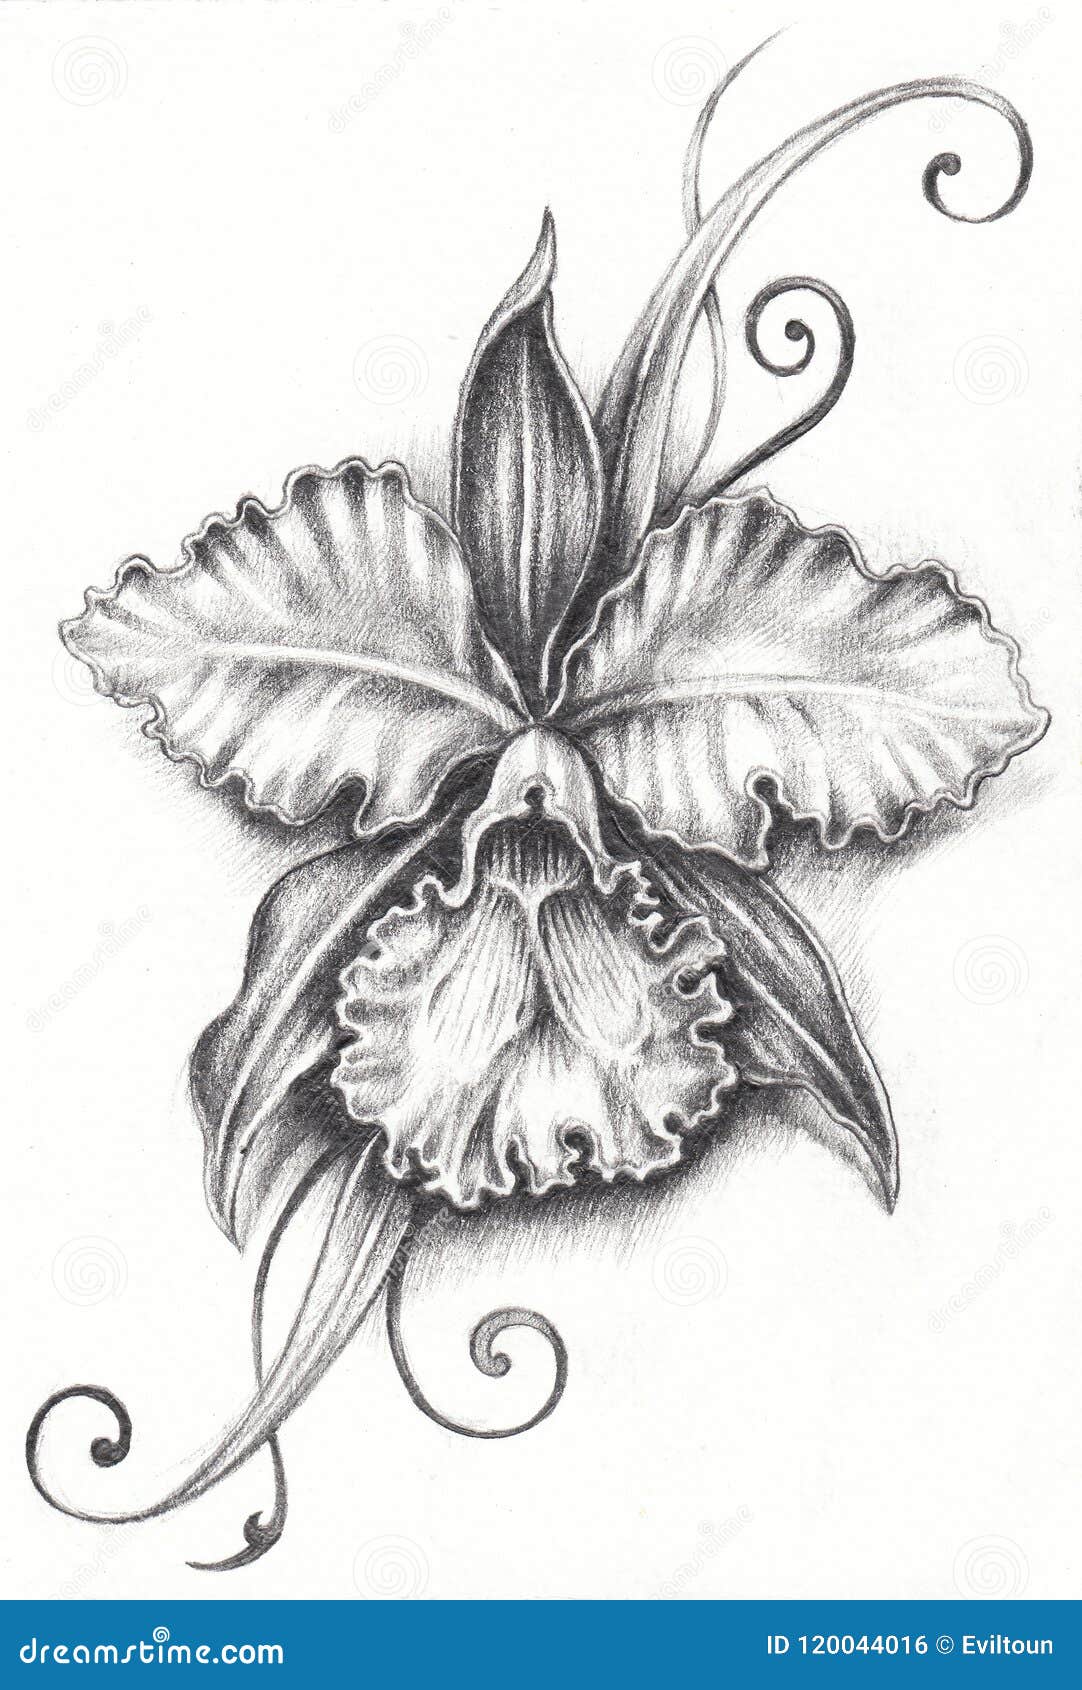 Cattleya tattoo